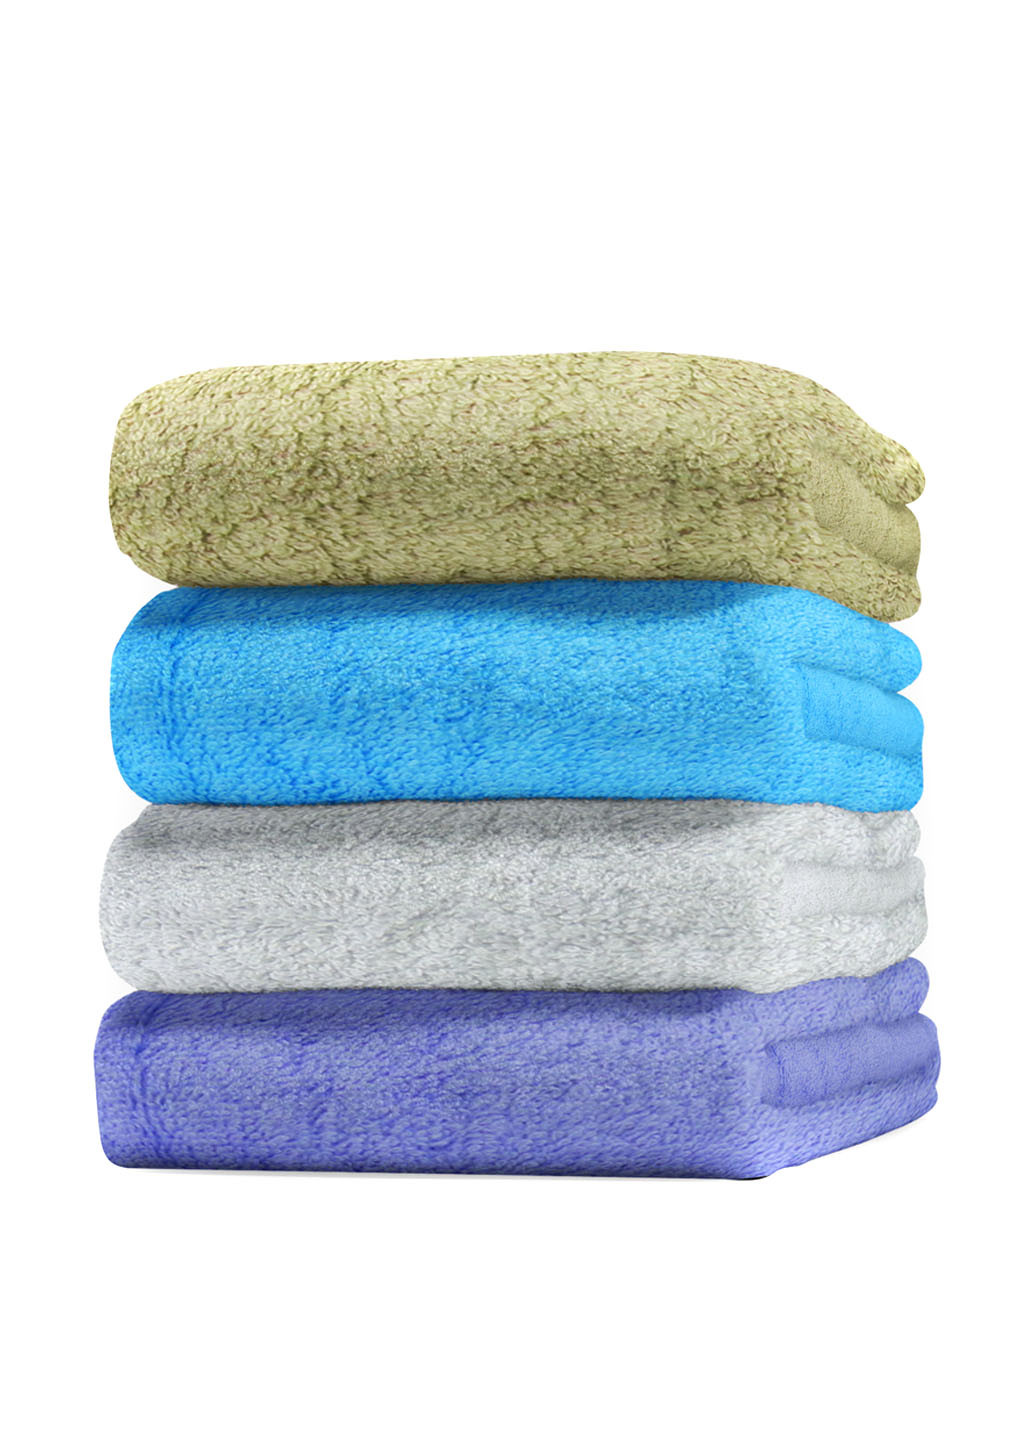 No Brand полотенце, 70х140 см однотонный голубой производство - Турция